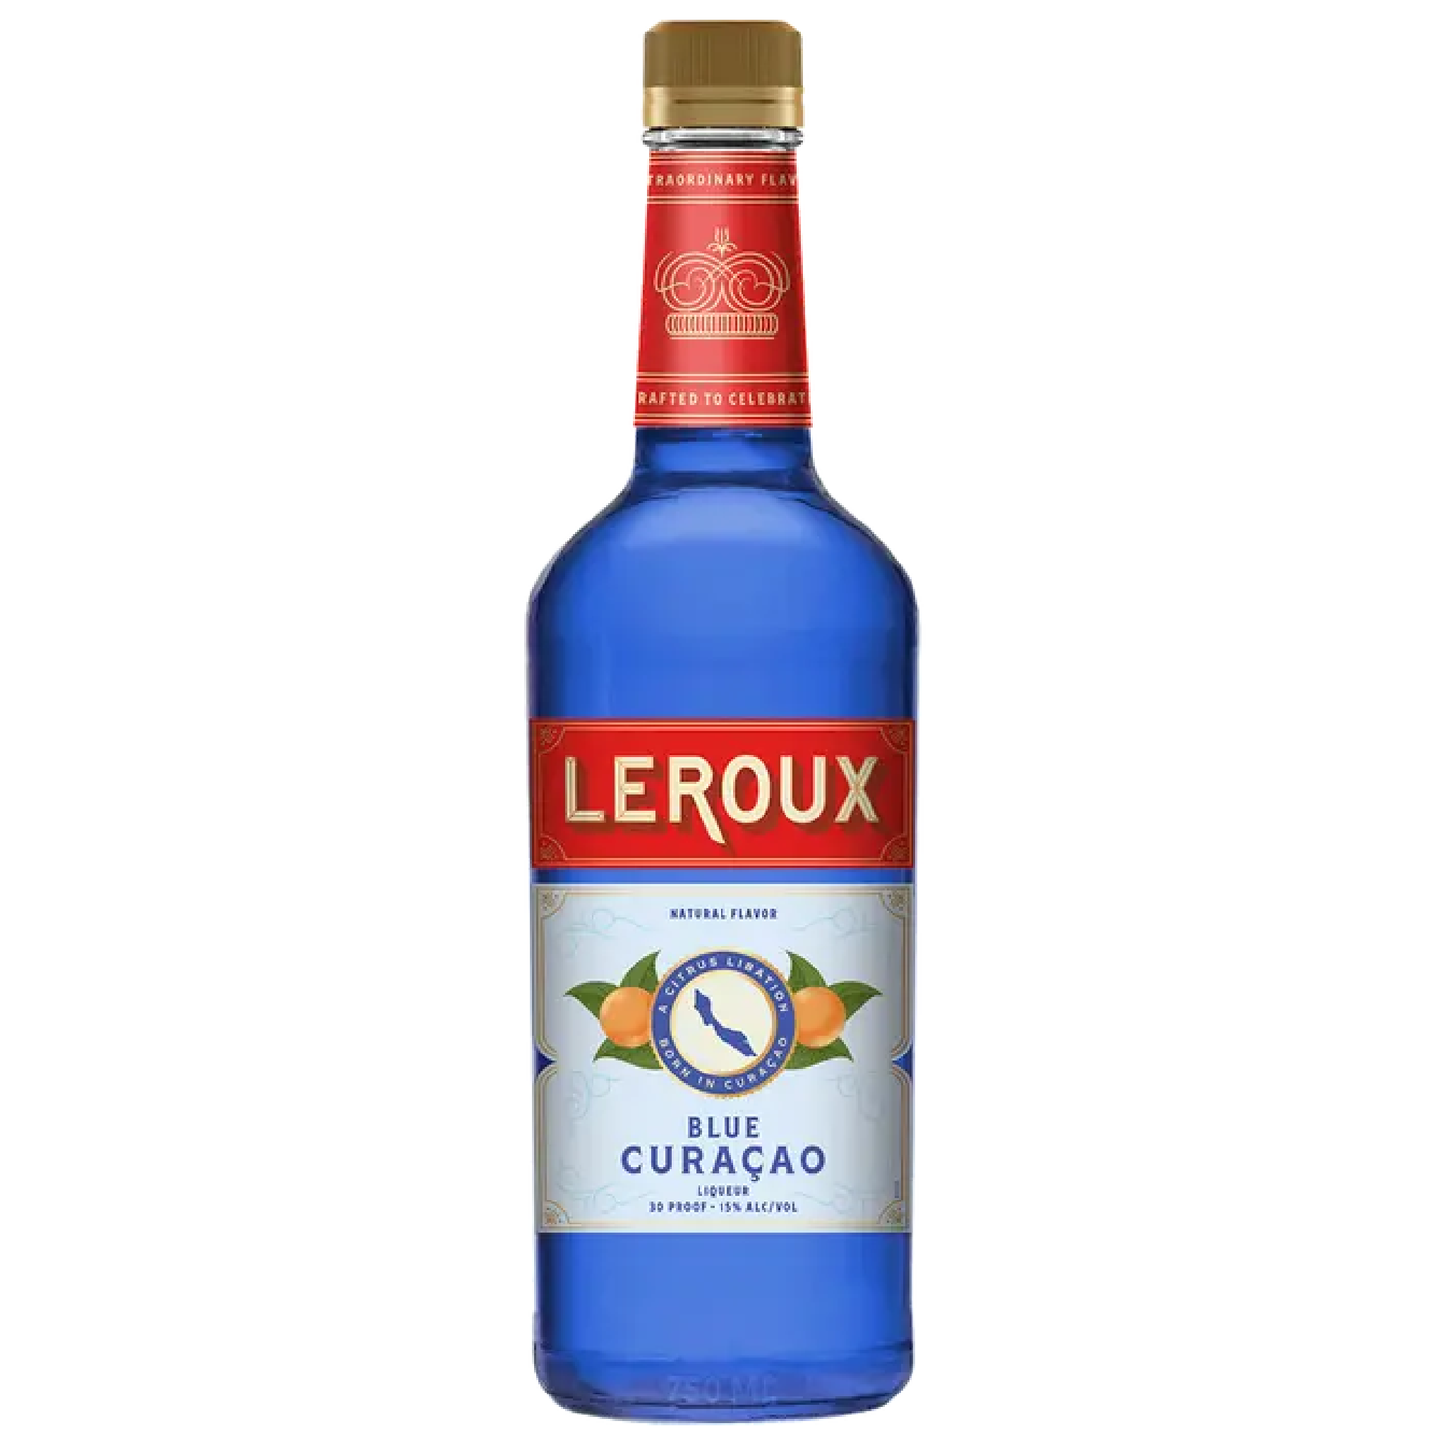 Leroux Curacao Blue - Liquor Geeks